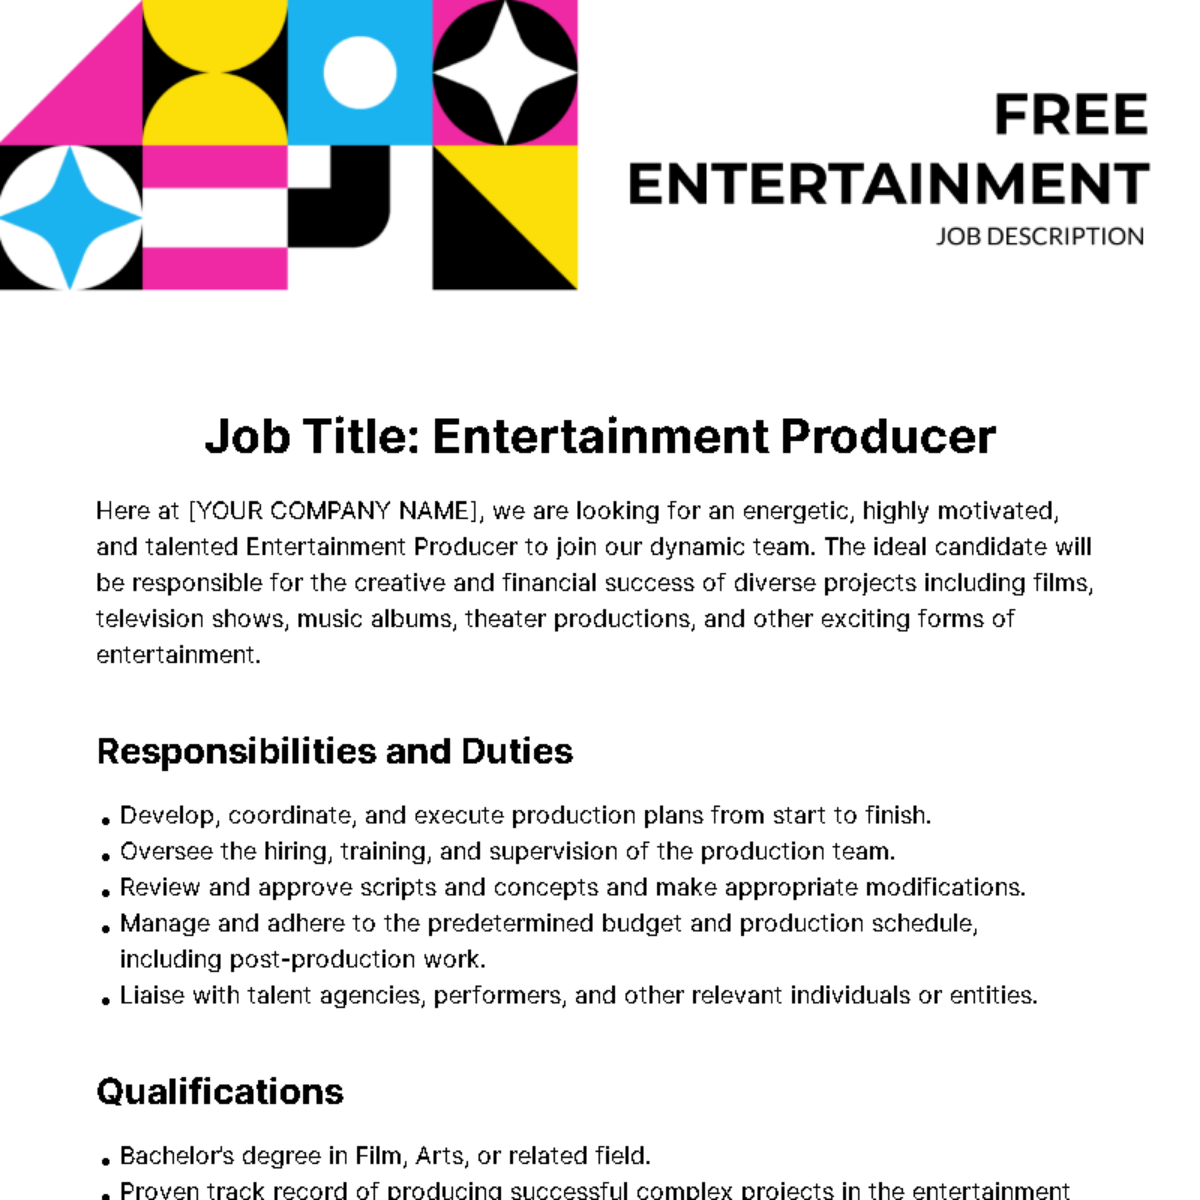 Free Entertainment Job Description Template